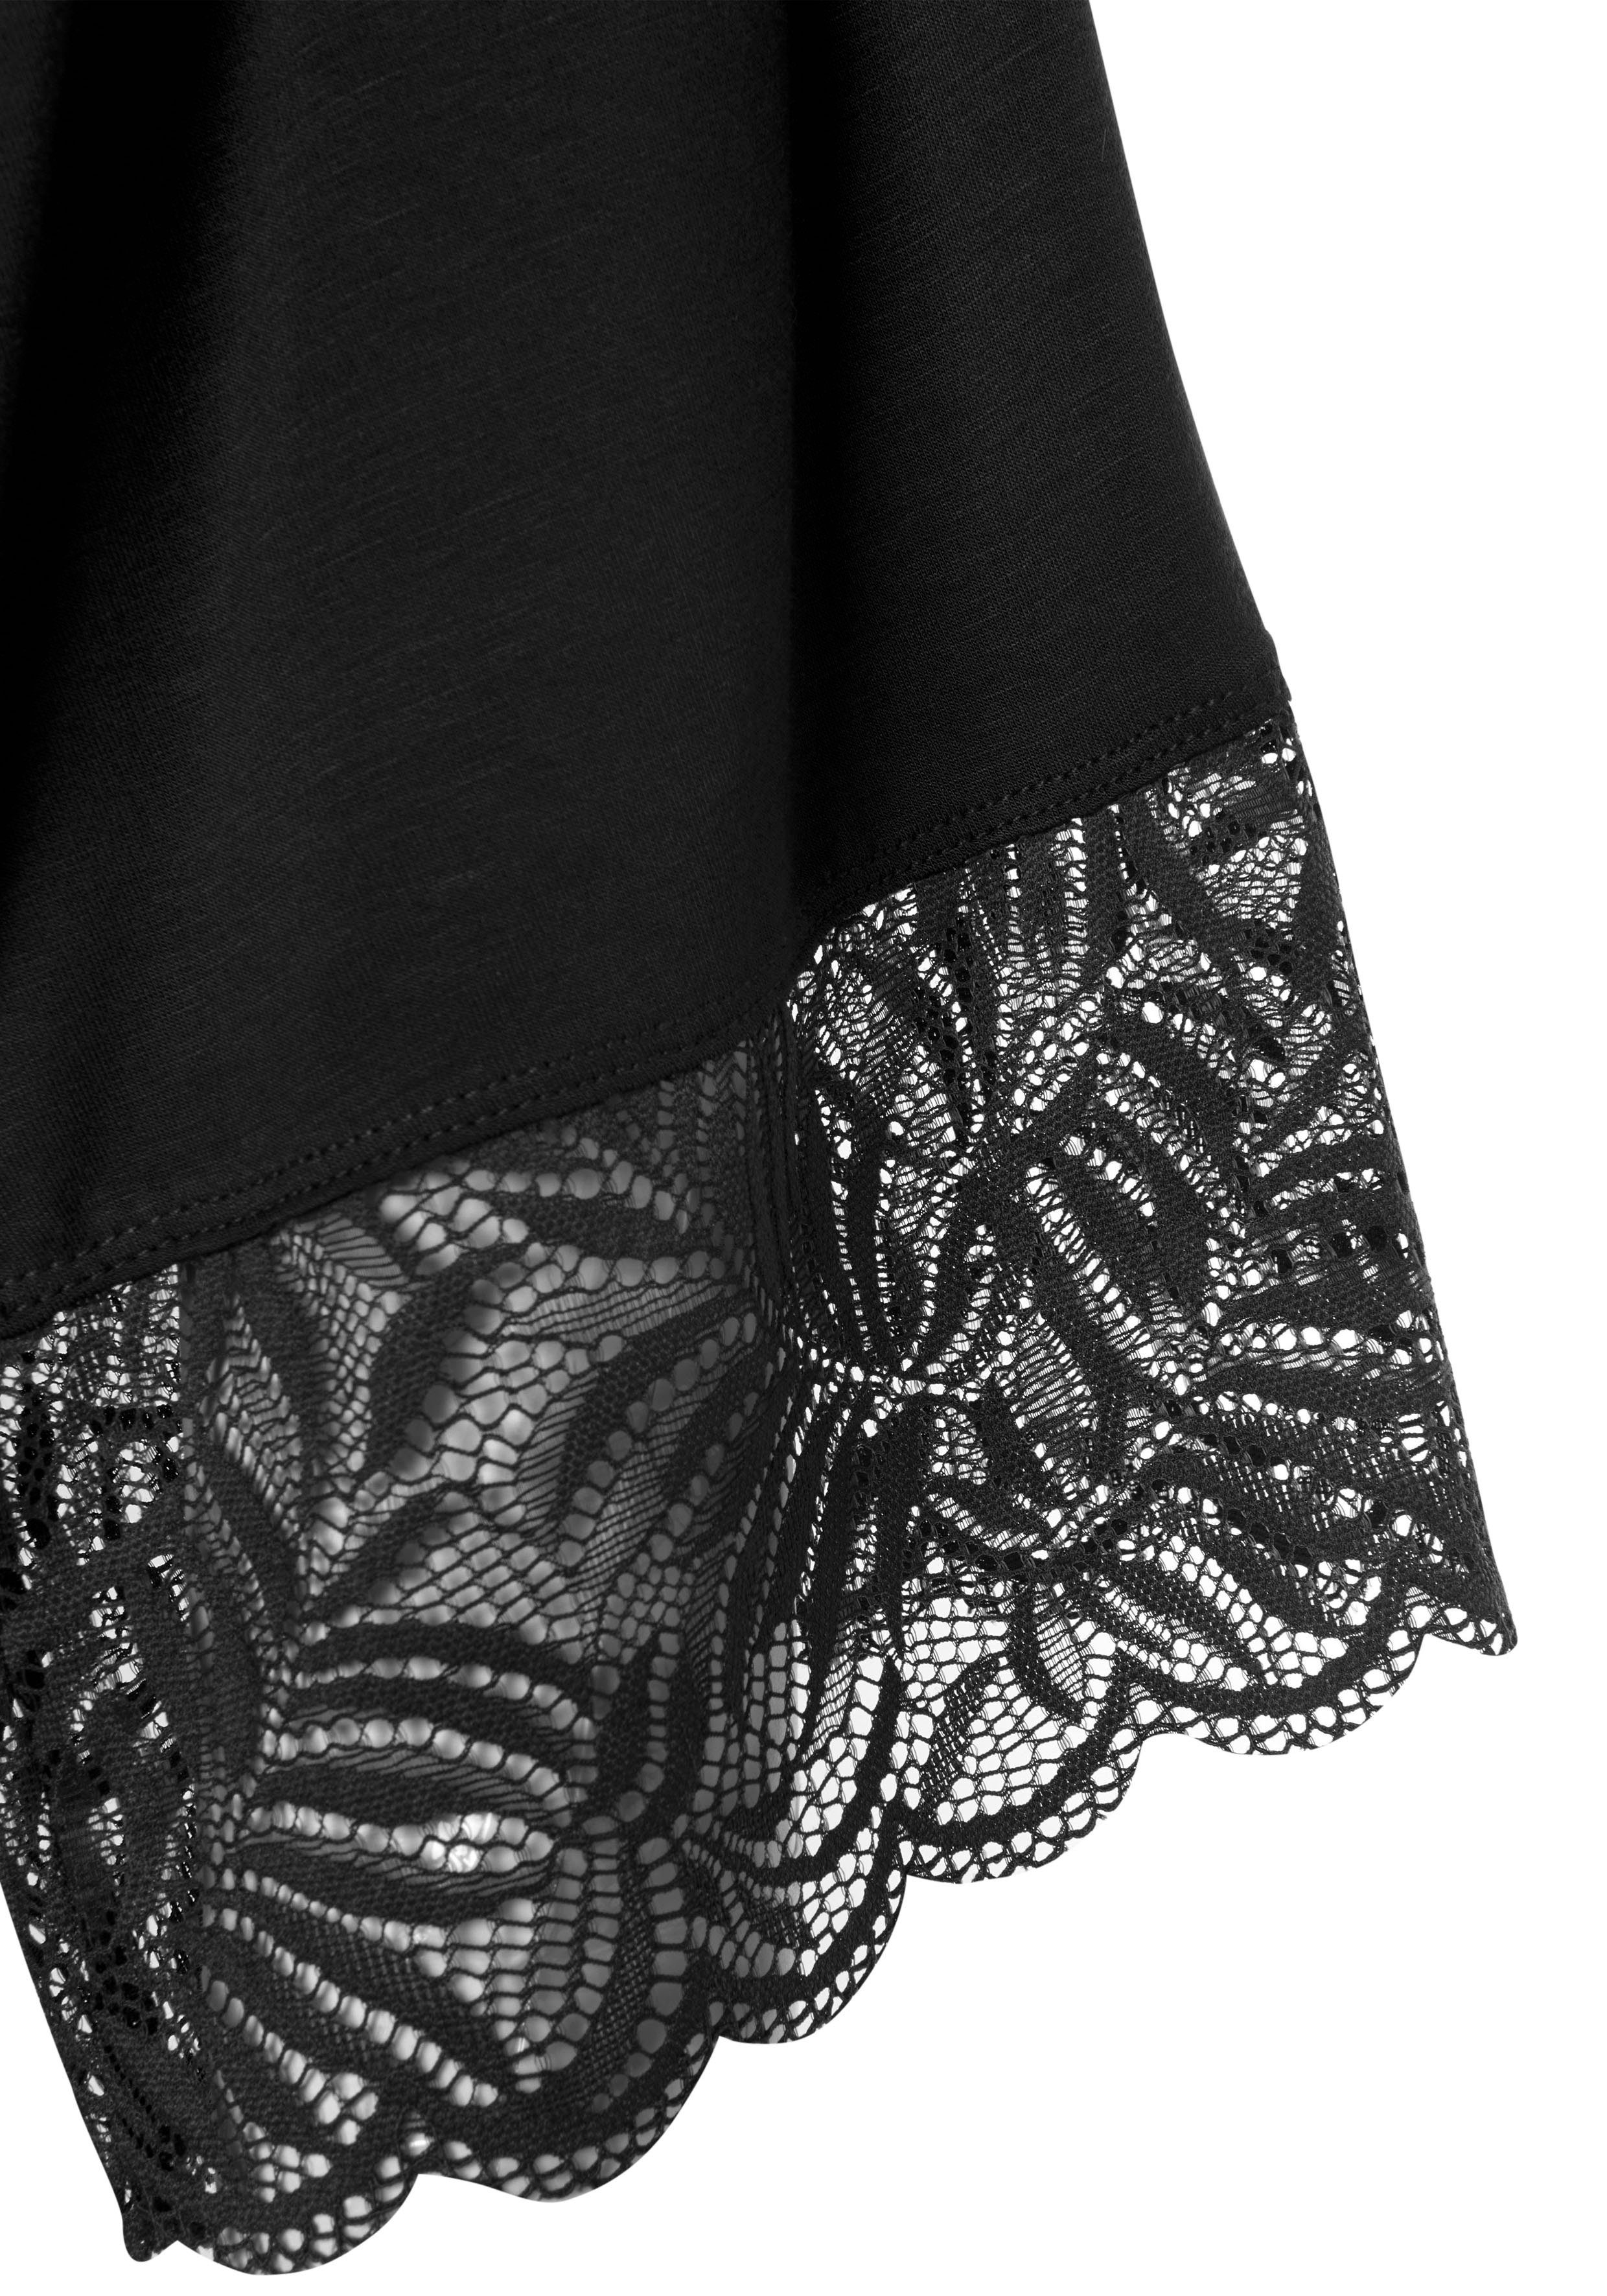 LASCANA schwarz Gürtel, Viskose, Kimono-Kragen, schönen Spitzendetails mit Kimono, Kurzform,